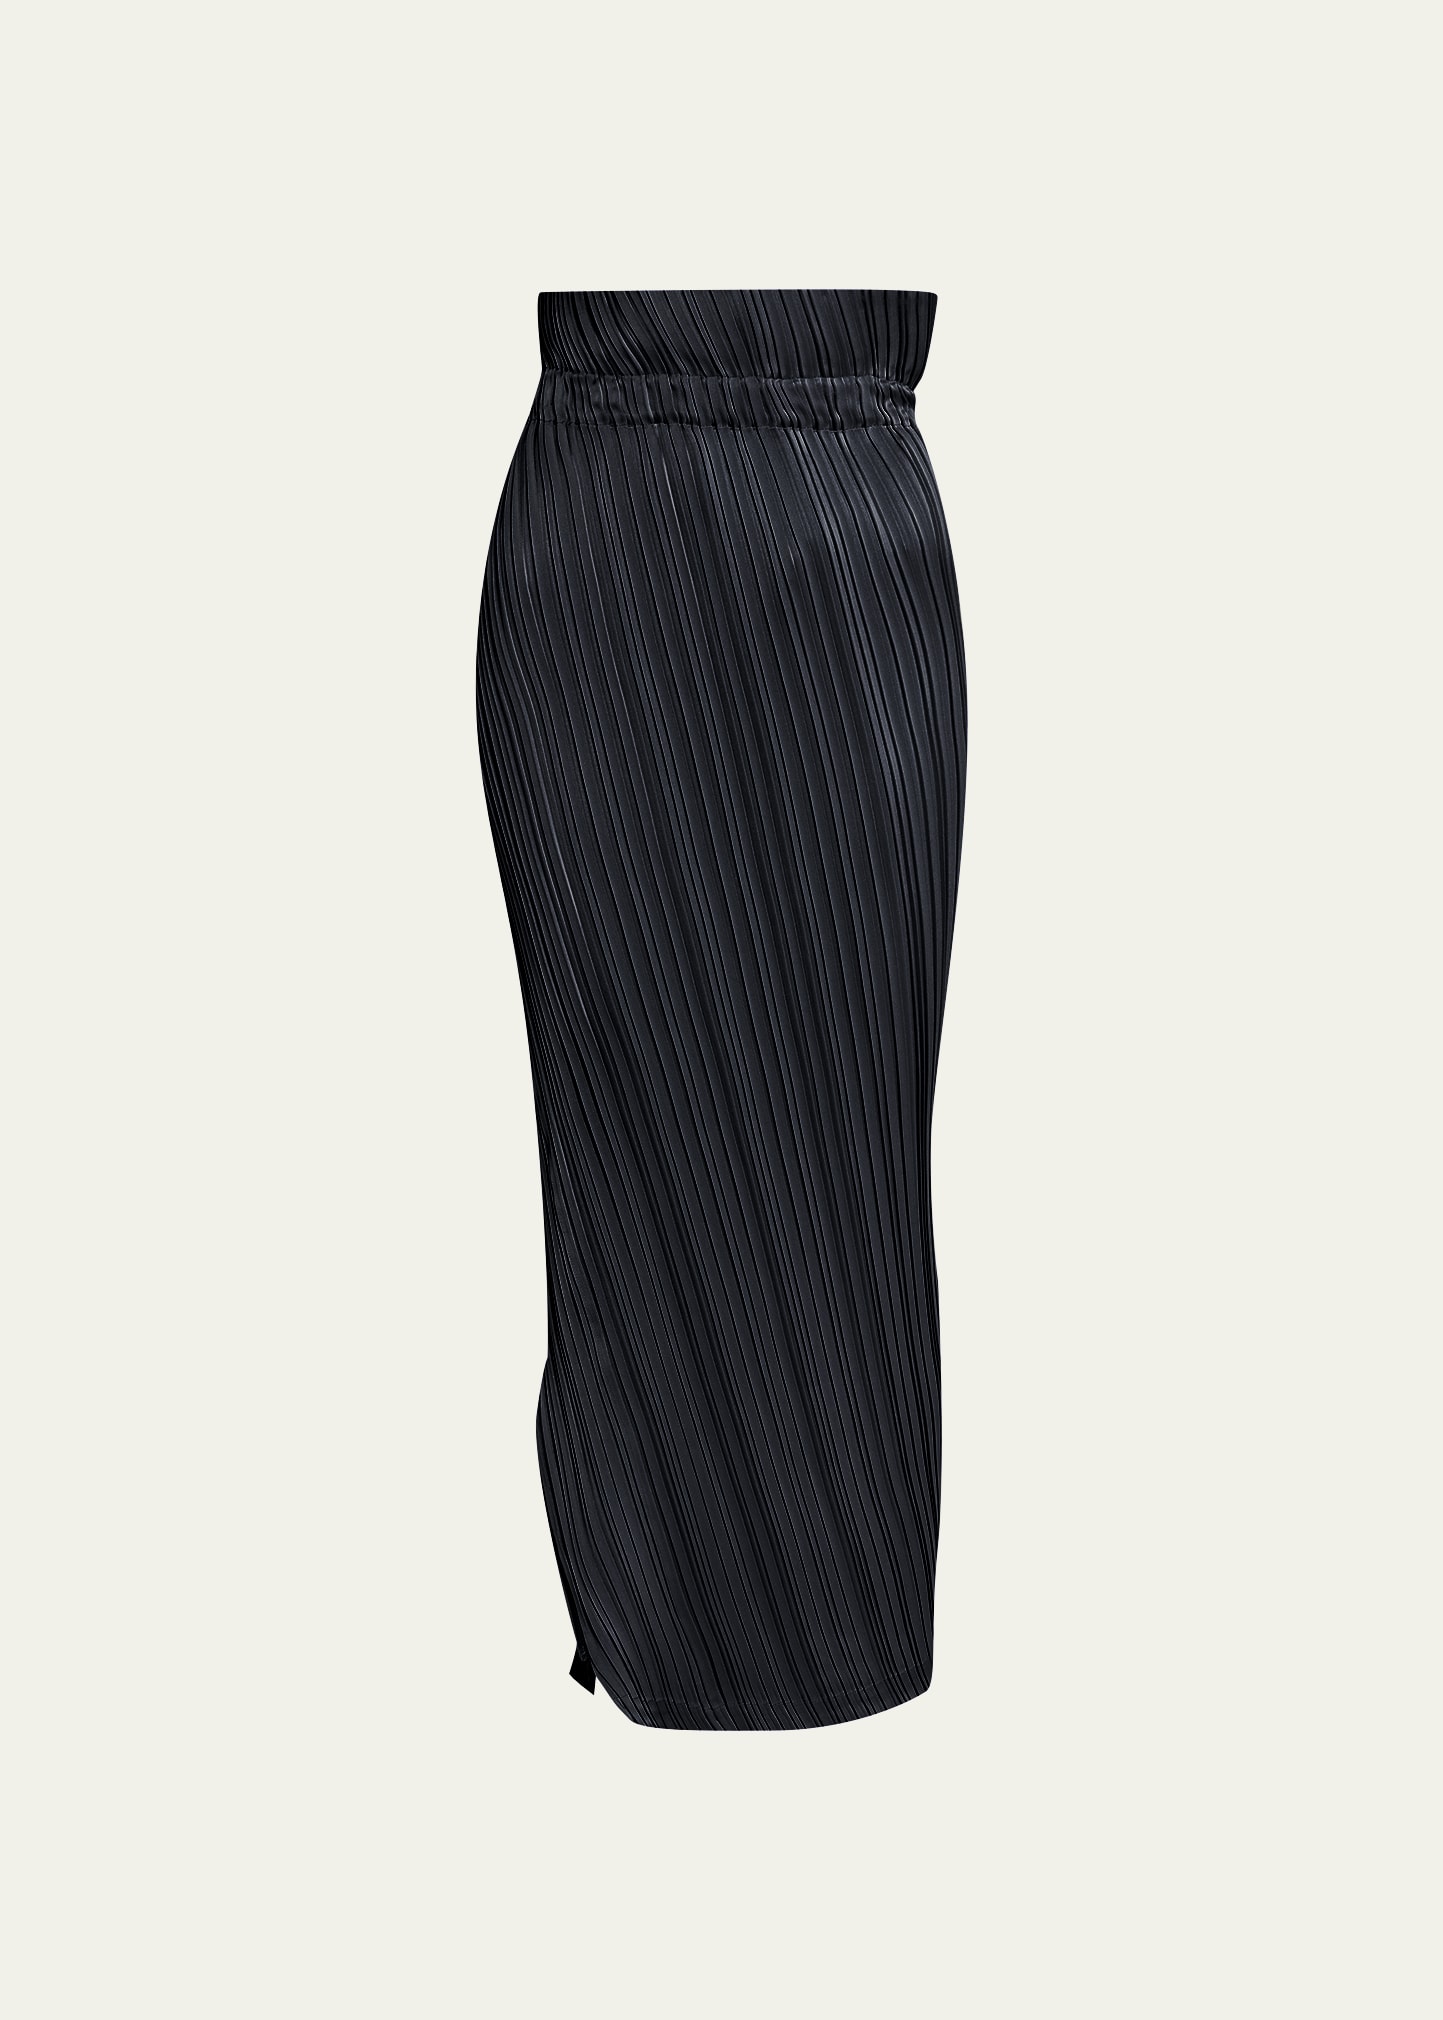 Issey Miyake Tangible Pleats Skirt - Bergdorf Goodman